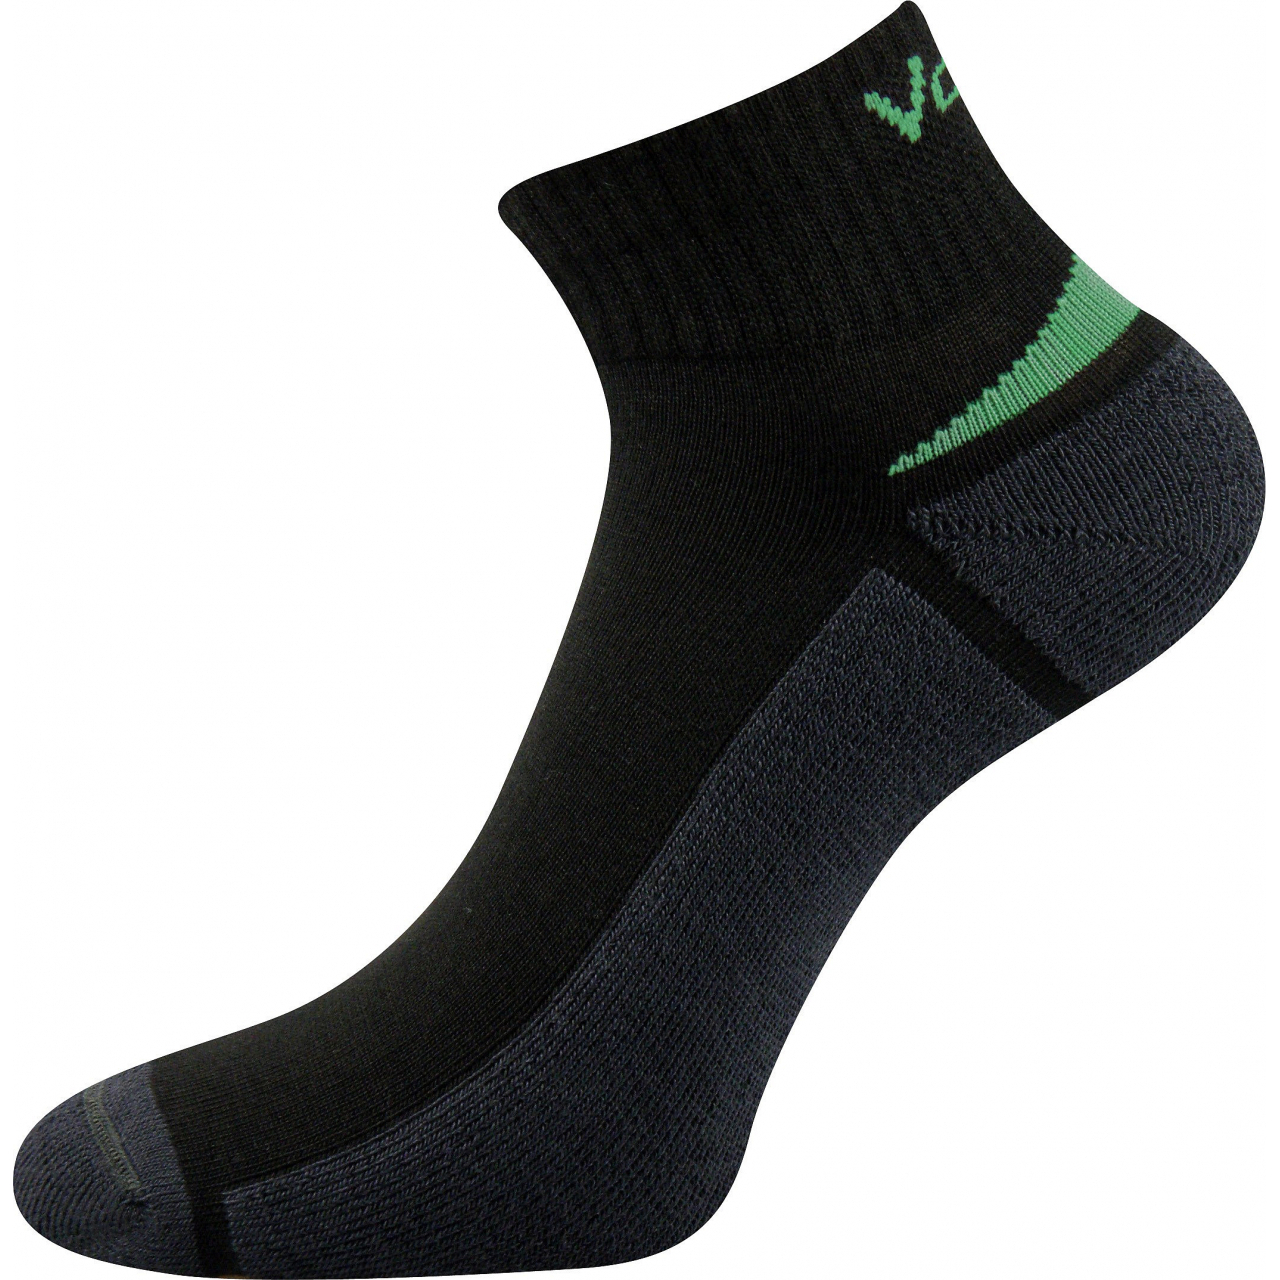 Ponožky snížené sportovní Voxx Aston silproX - černé-zelené, 35-38